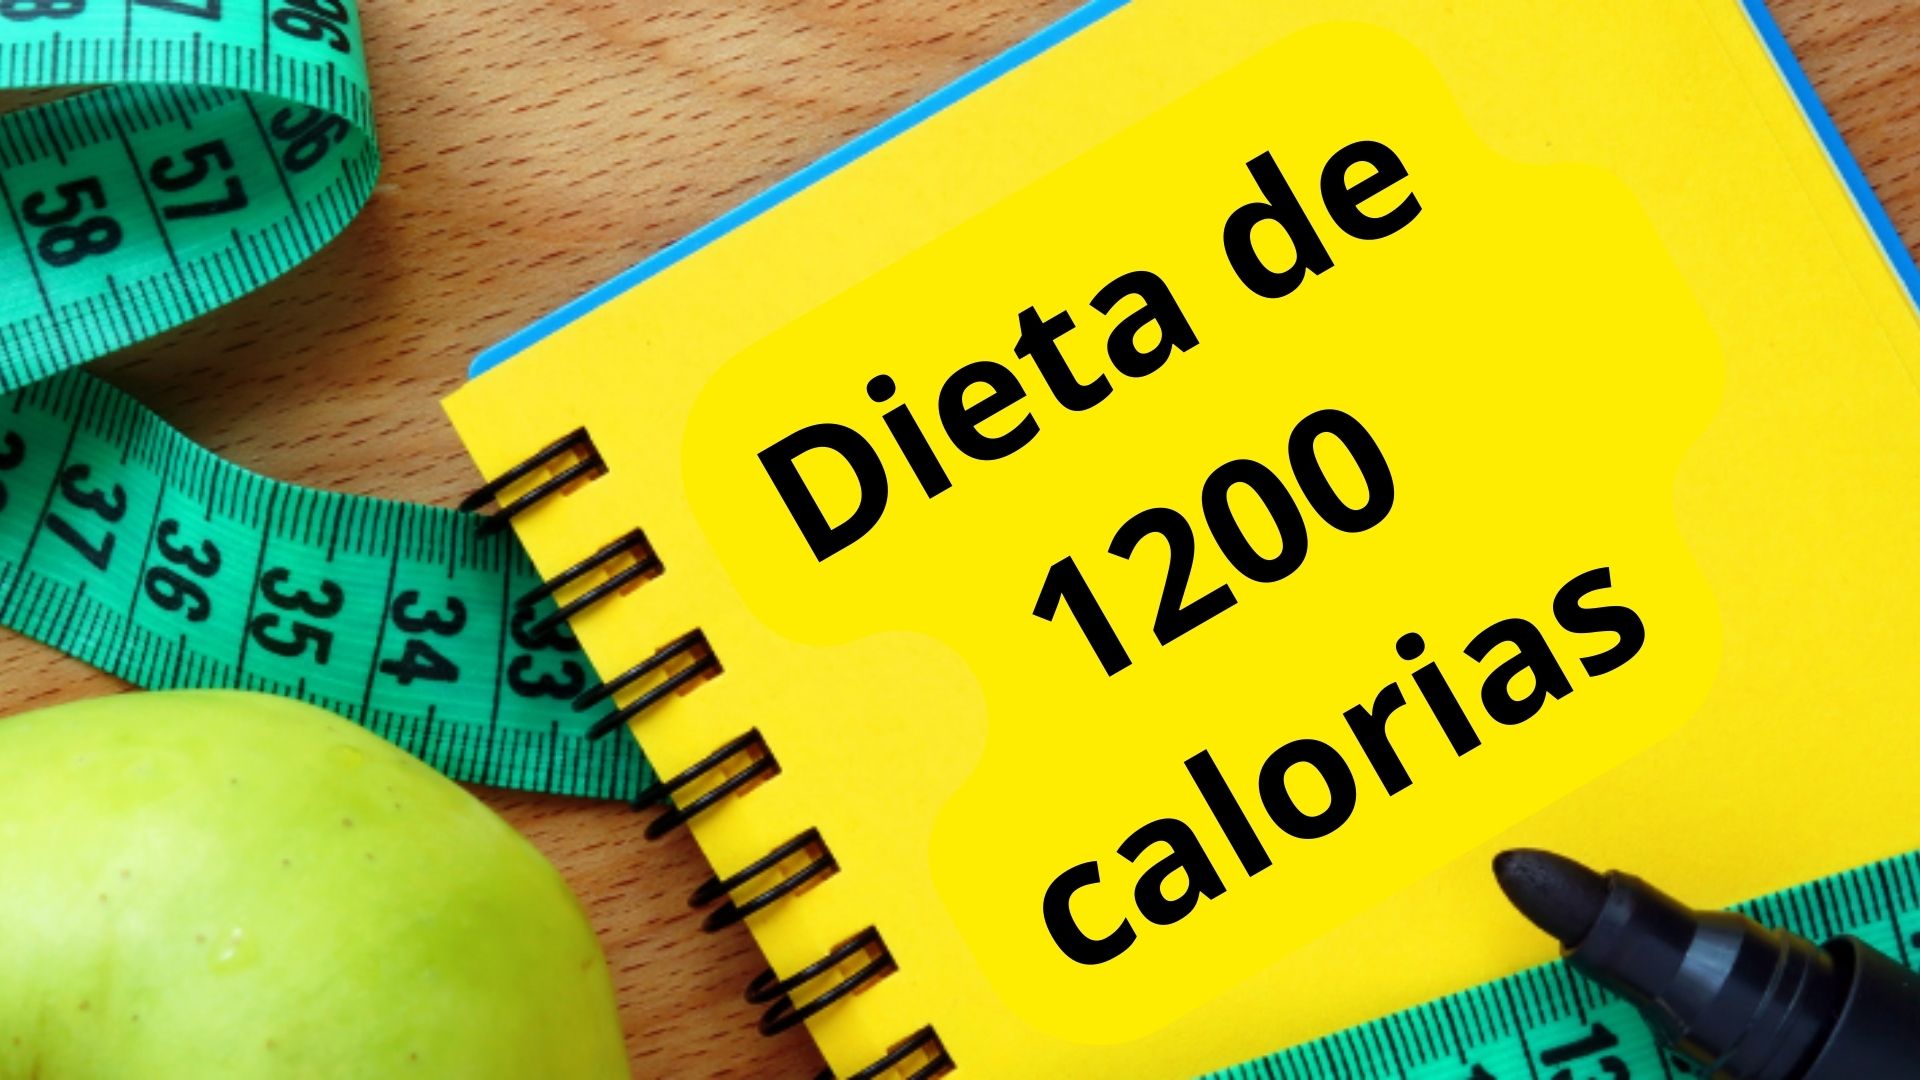 Dieta de 1200 calorias